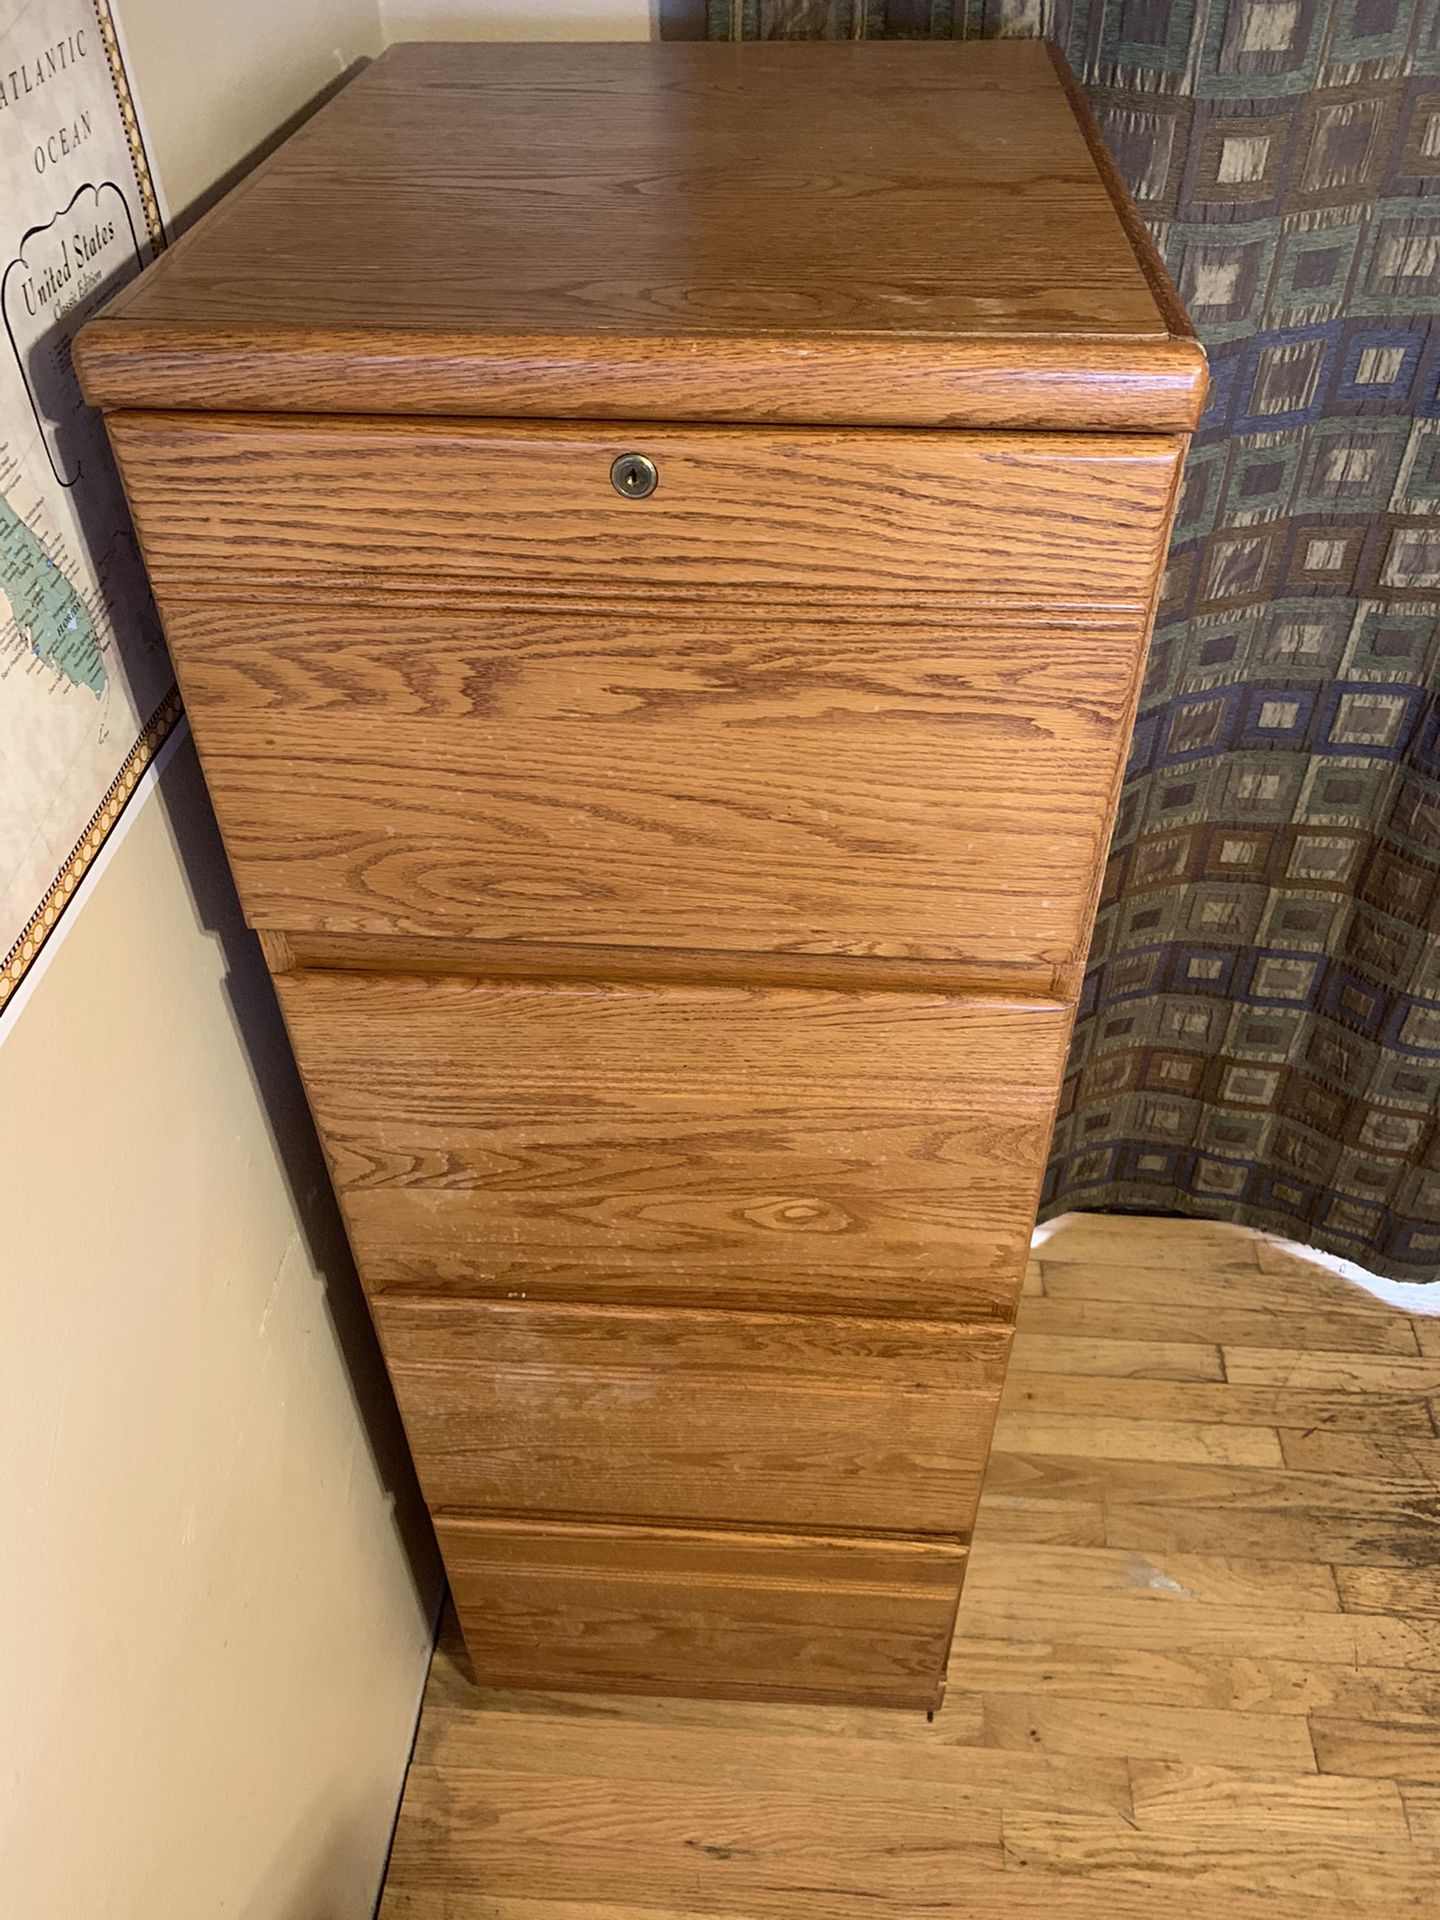 Solid oak 4 drawer file cabinet